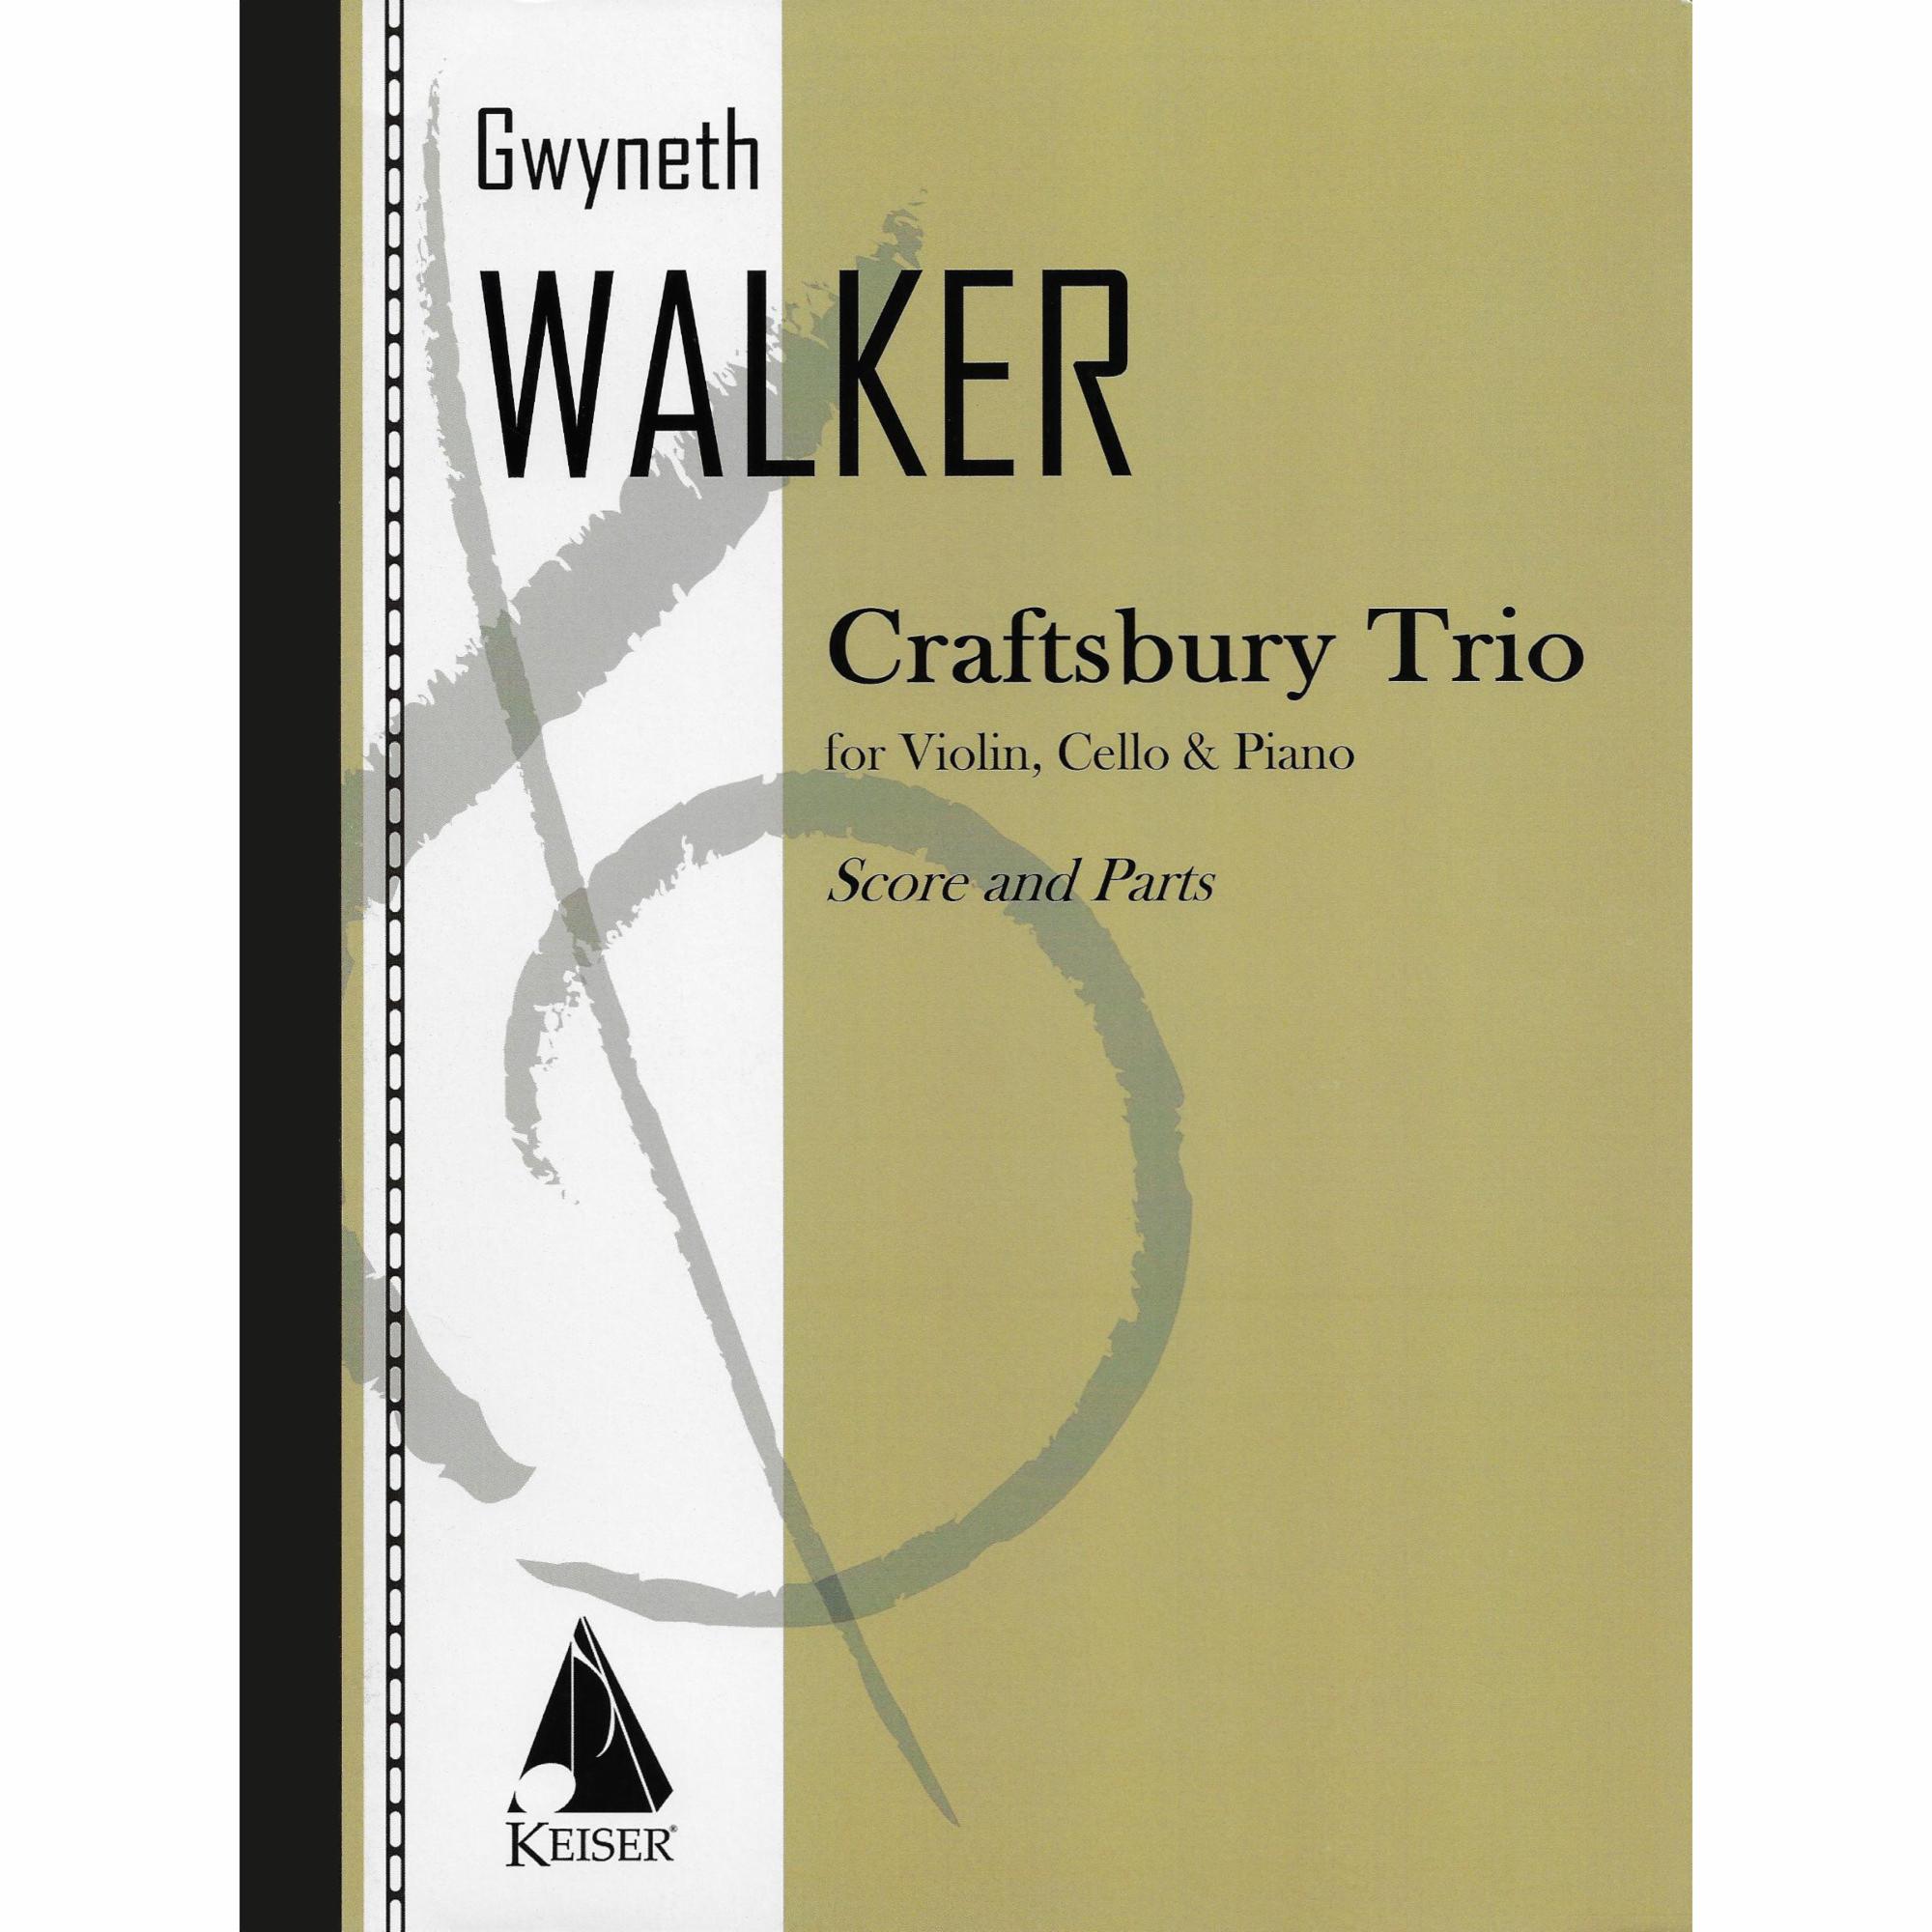 Walker -- Craftsbury Trio